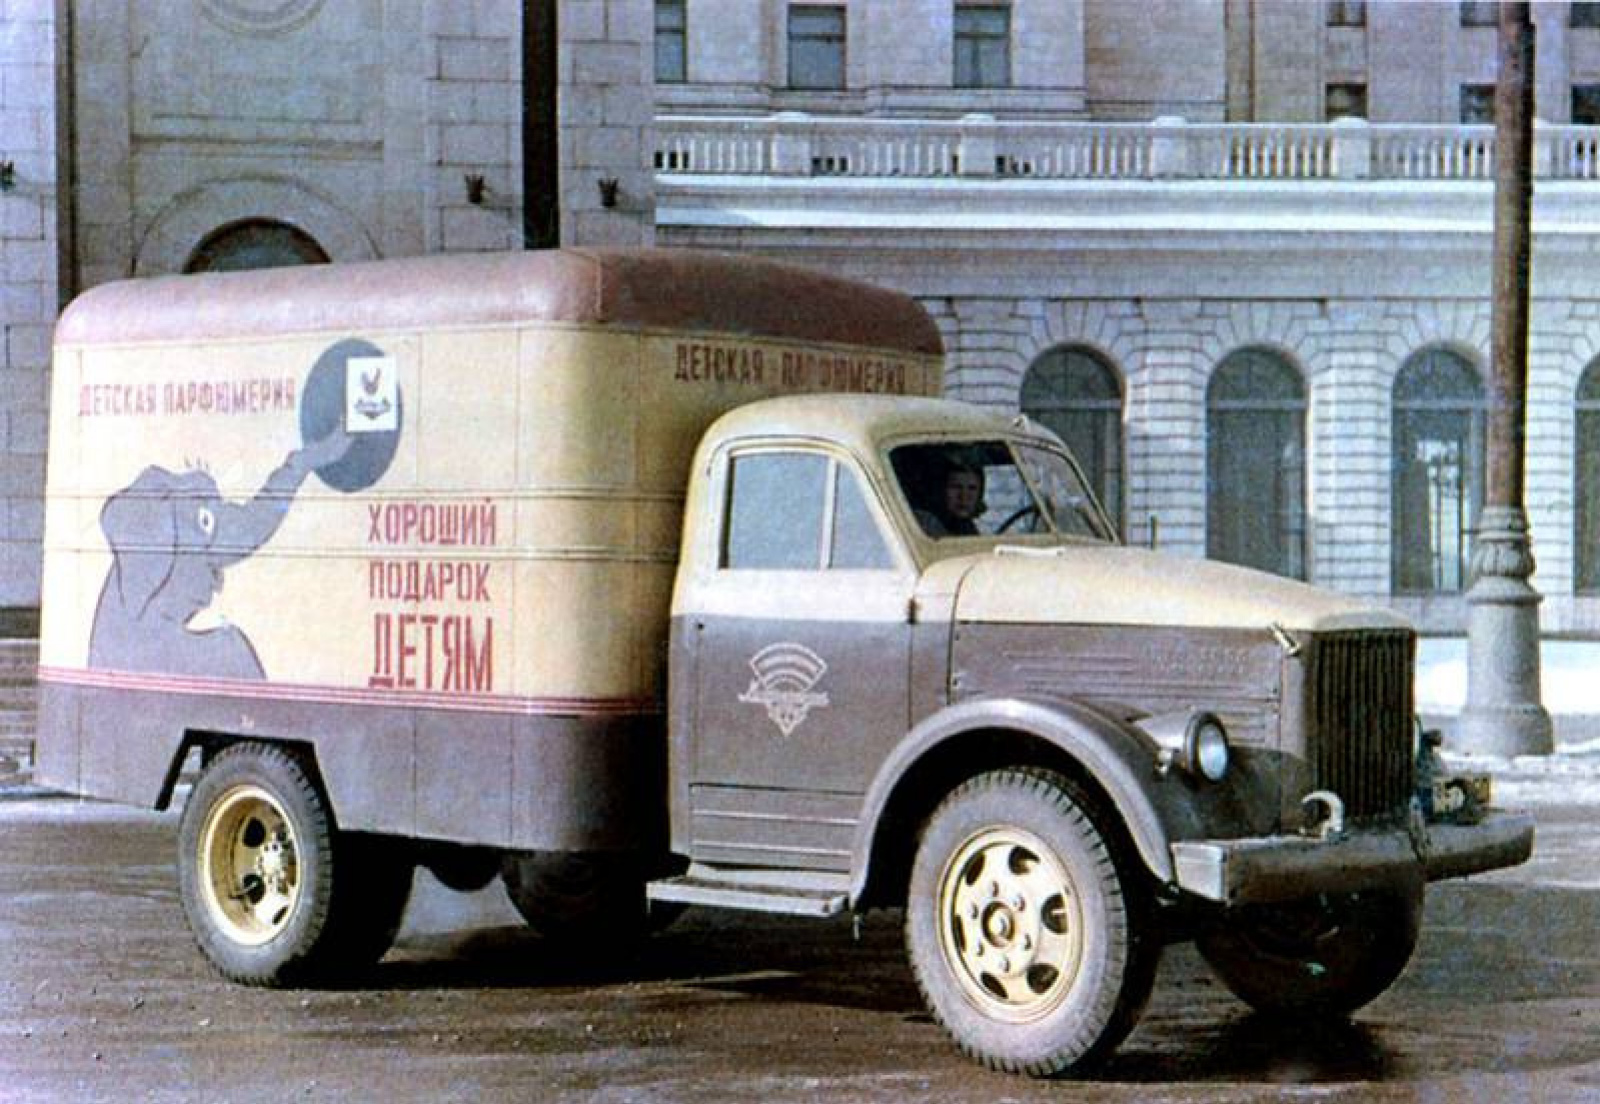 The 1929 Citroen delivery truck promoting Volez, Voguez, Voyagez